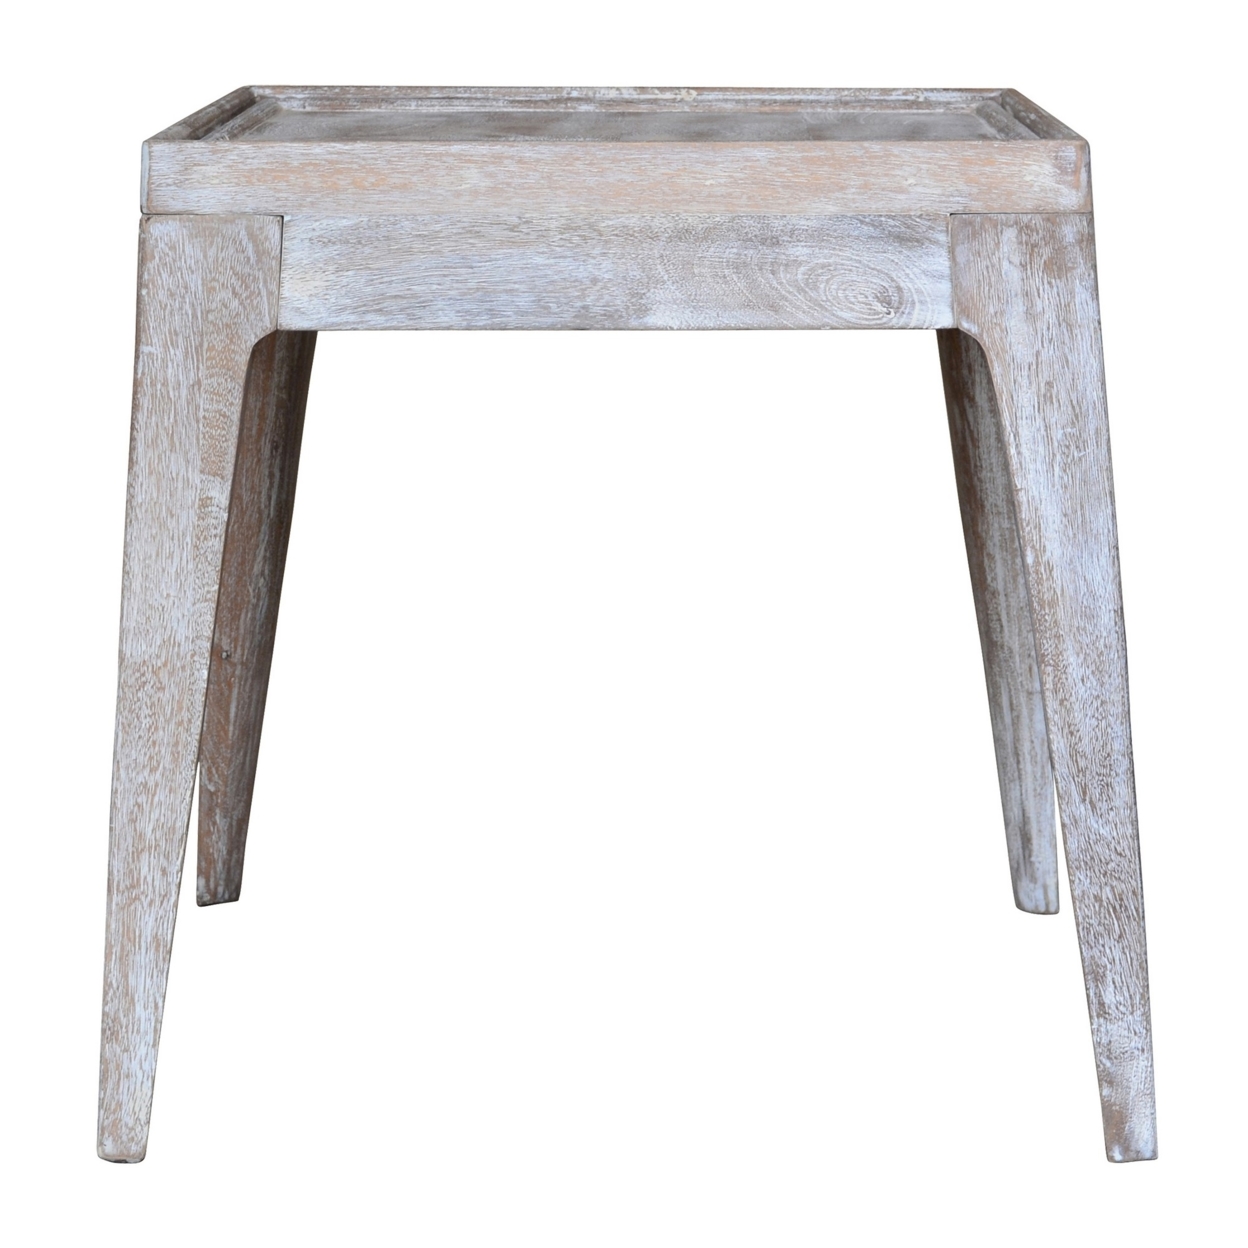 22 Inch Rustic End Table, Mango Wood, Whitewashed Weathered Finish, White, Saltoro Sherpi